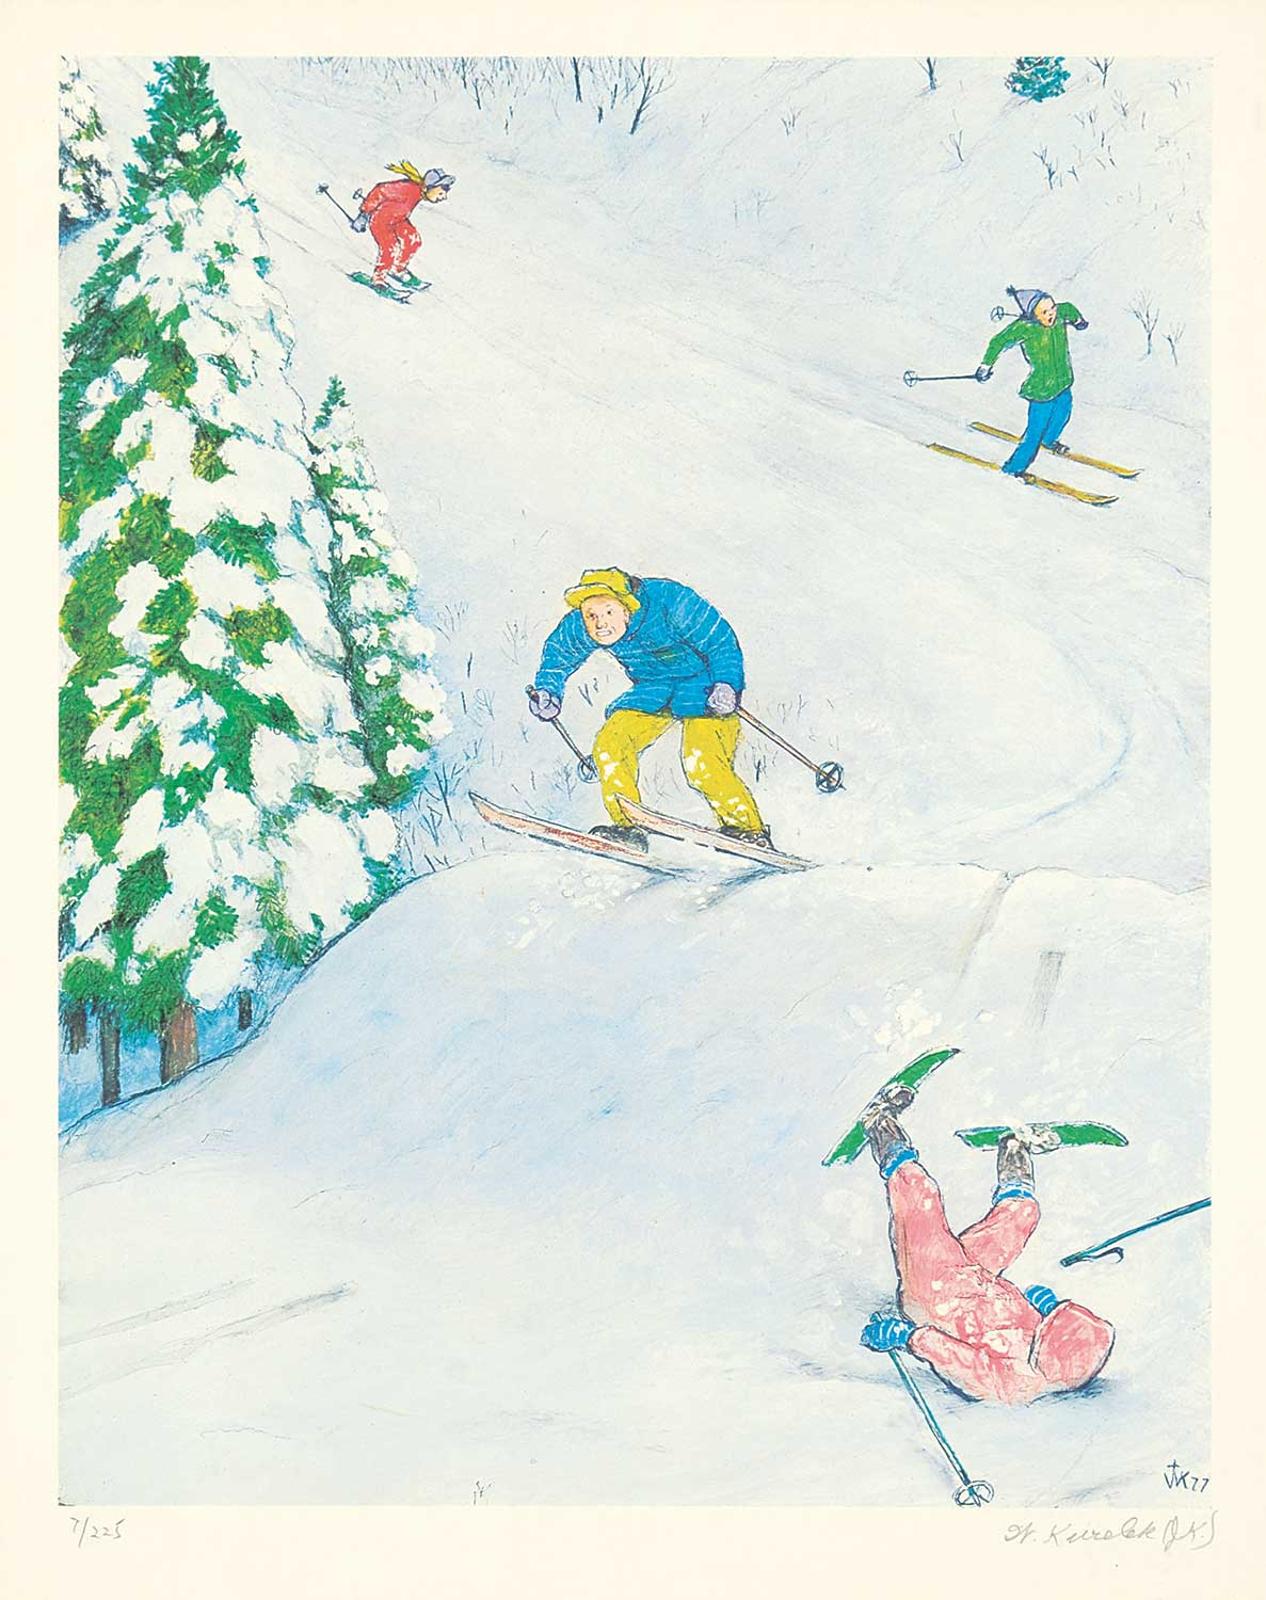 William Kurelek (1927-1977) - Untitled - Skiing  #7/225